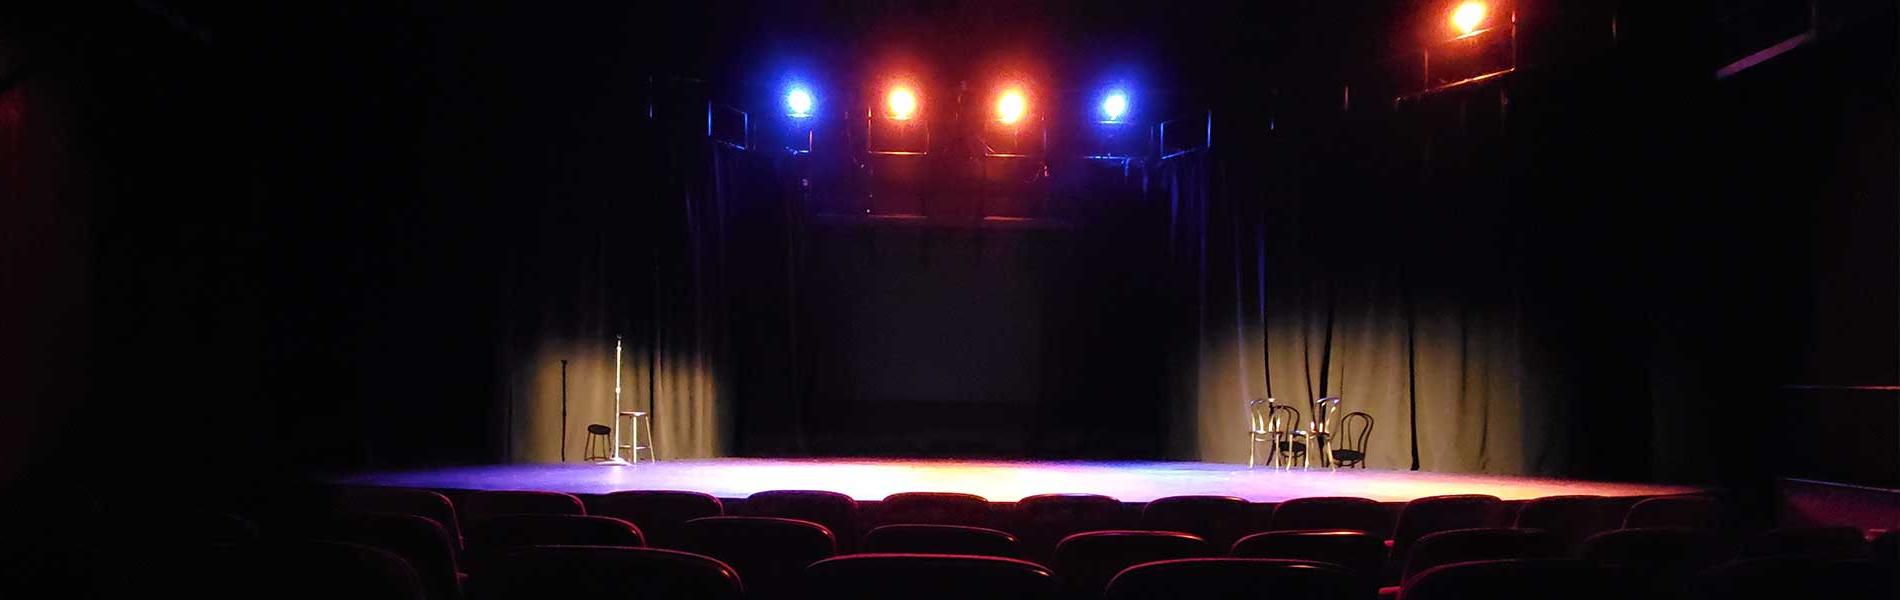 新月剧院是99hg皇冠登录的戏剧舞台，以戏剧专业学生的作品为特色. 这个装修精美的149个座位的剧院作为表演和教室空间. 横幅图像